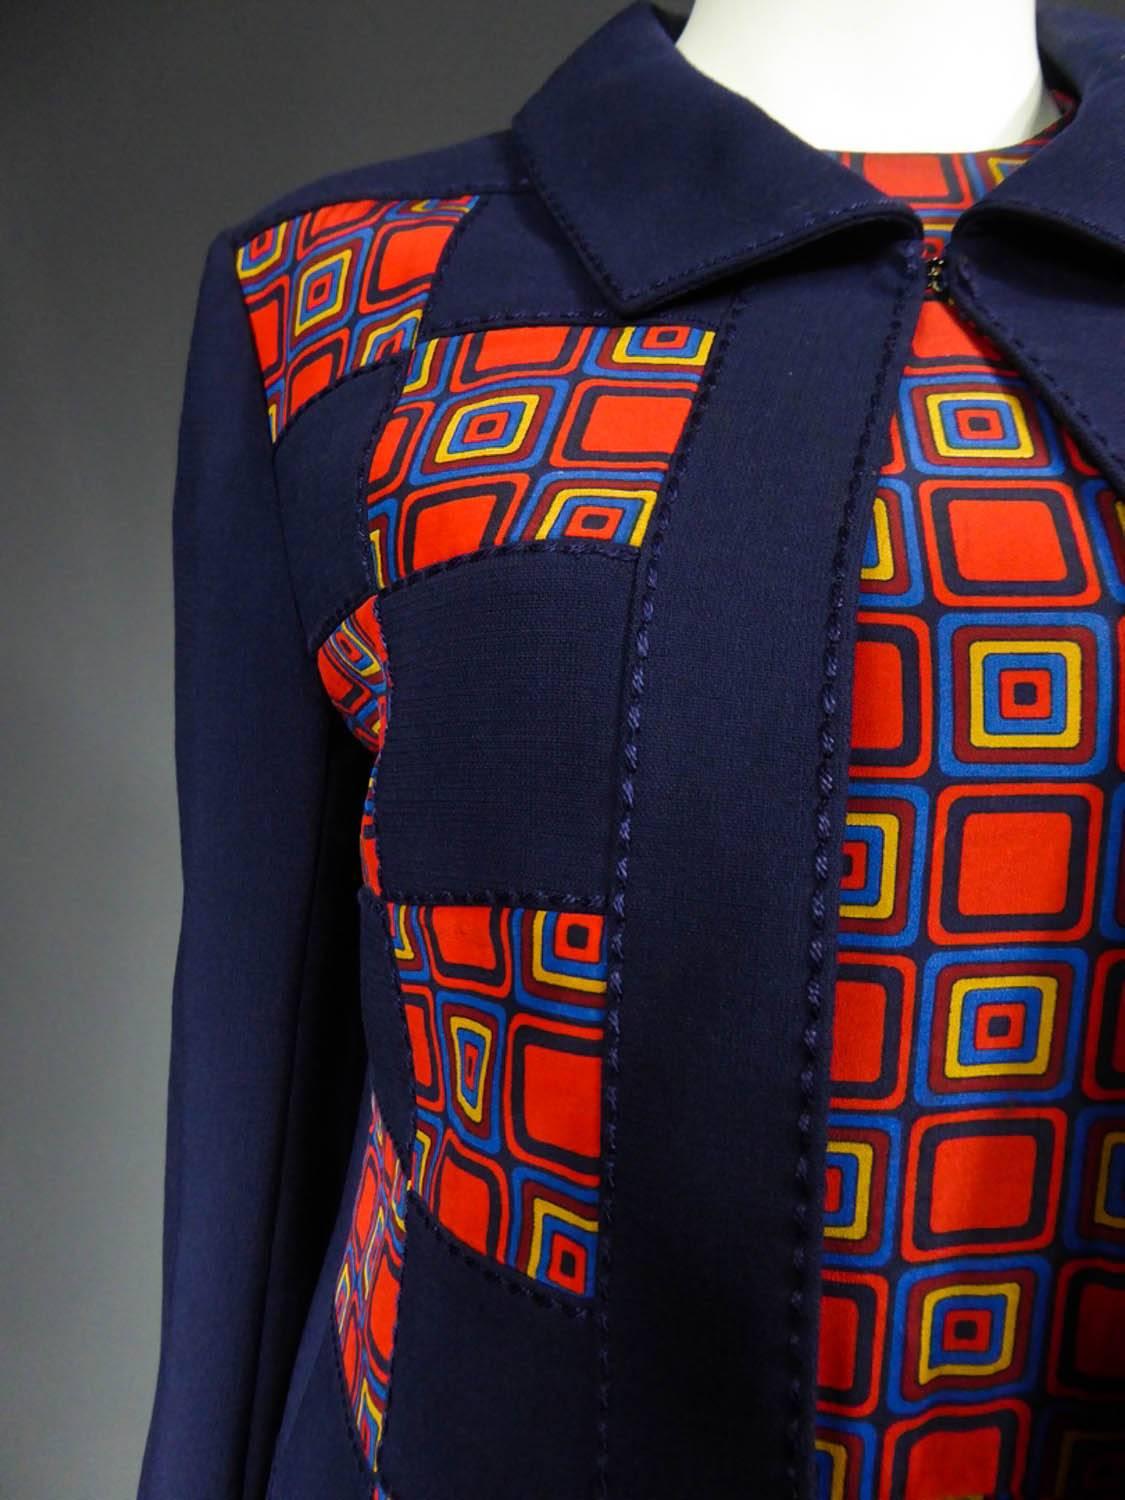 Ca. 1972

Frankreich

Haute-Couture-Set mit Kleid und Jacke aus marineblauem Jersey und Seide, nicht identifiziert, aus den frühen 70er Jahren. Ärmelloses Kleid, Oberteil aus Seide mit quadratischem Druck im Vasarely-Stil, Rock mit tiefen Falten.